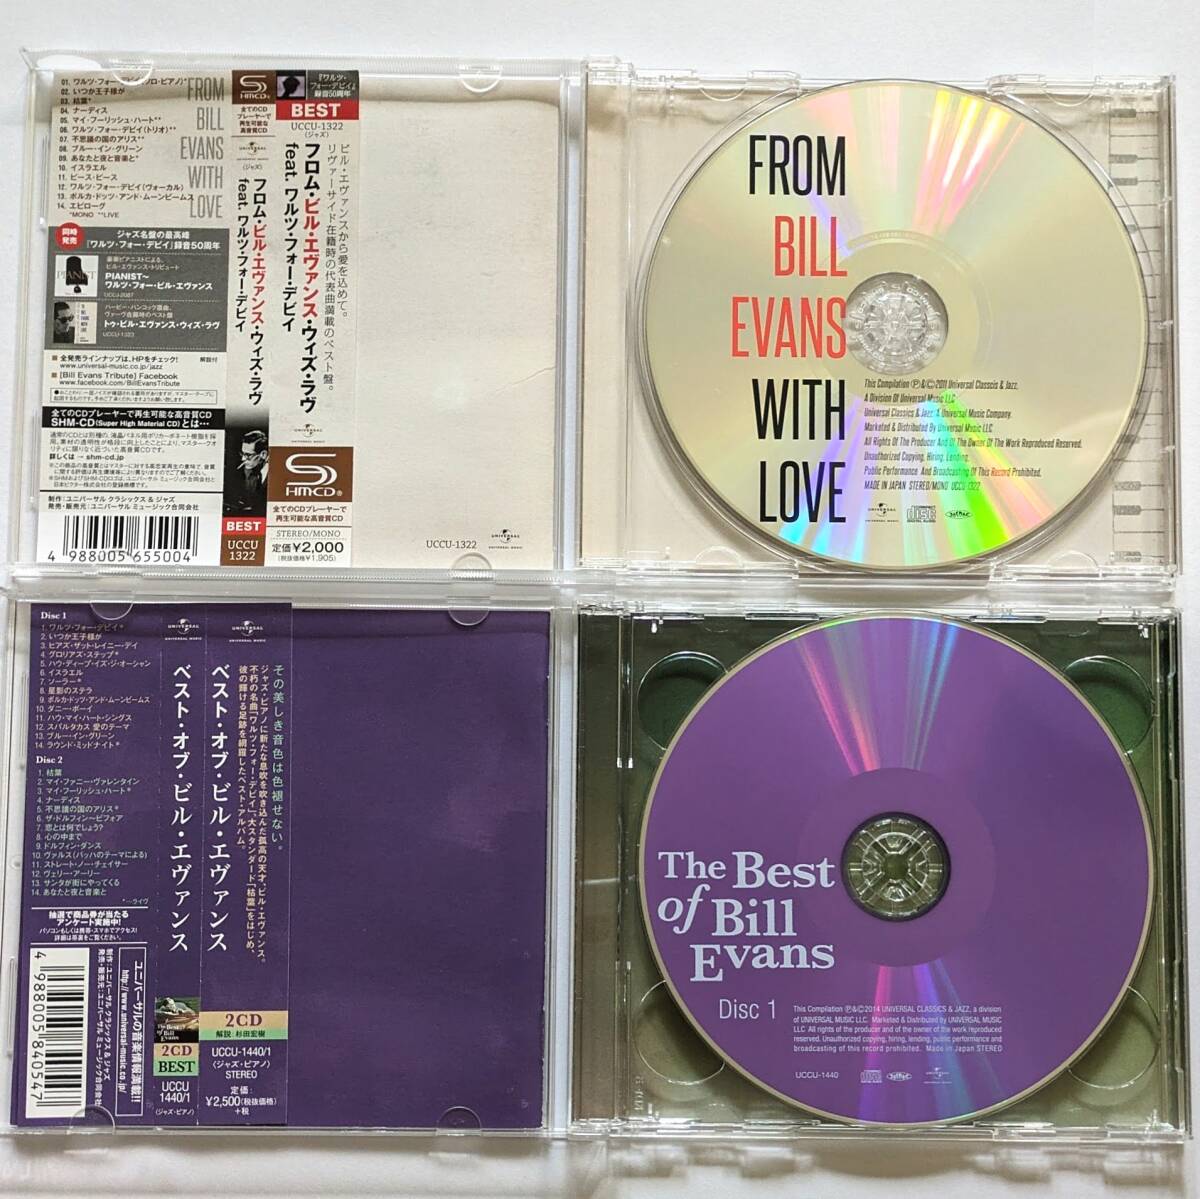 BILL EVANS ビル・エヴァンス 国内盤CD 6枚セット/ジム・ホール/2CDベスト盤/Waltz for Debby/アローン+2/シンフォニー・オーケストラ_画像6